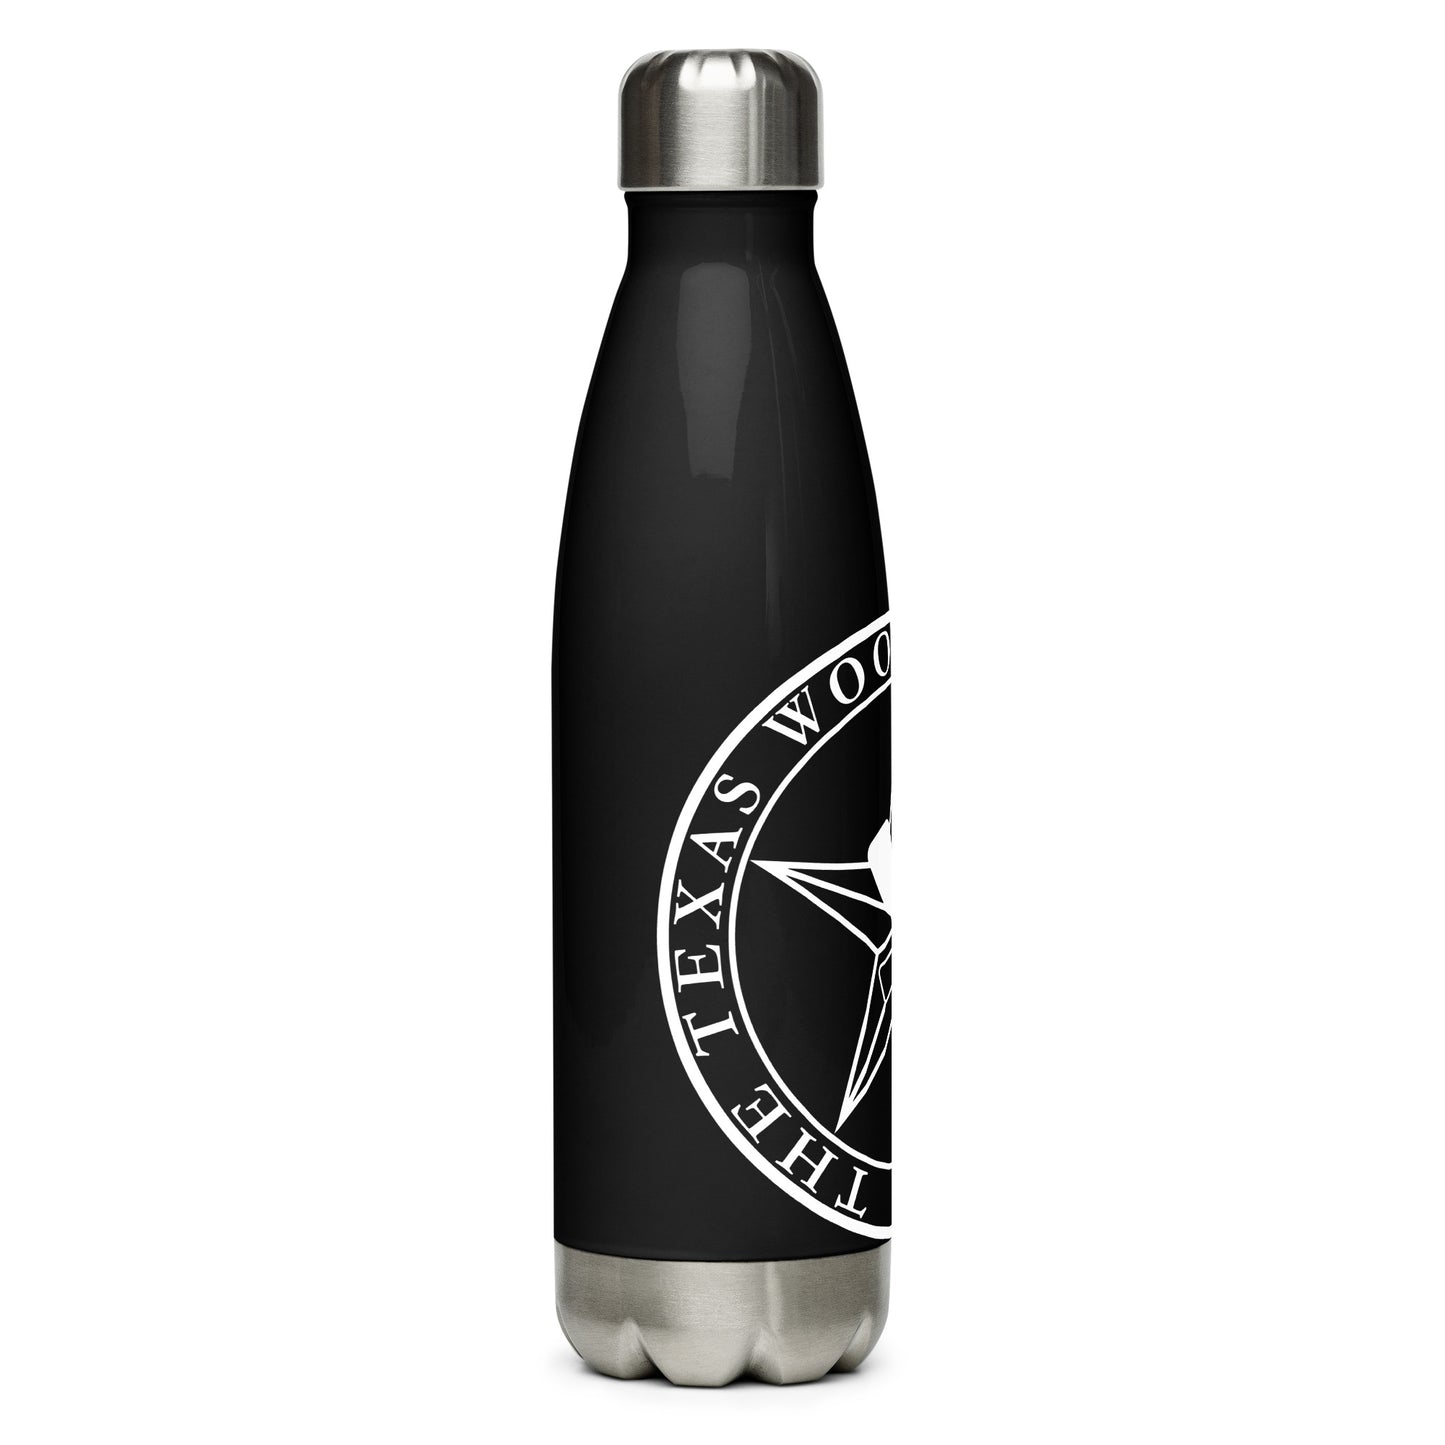 TWG Logo Stainless steel water bottle